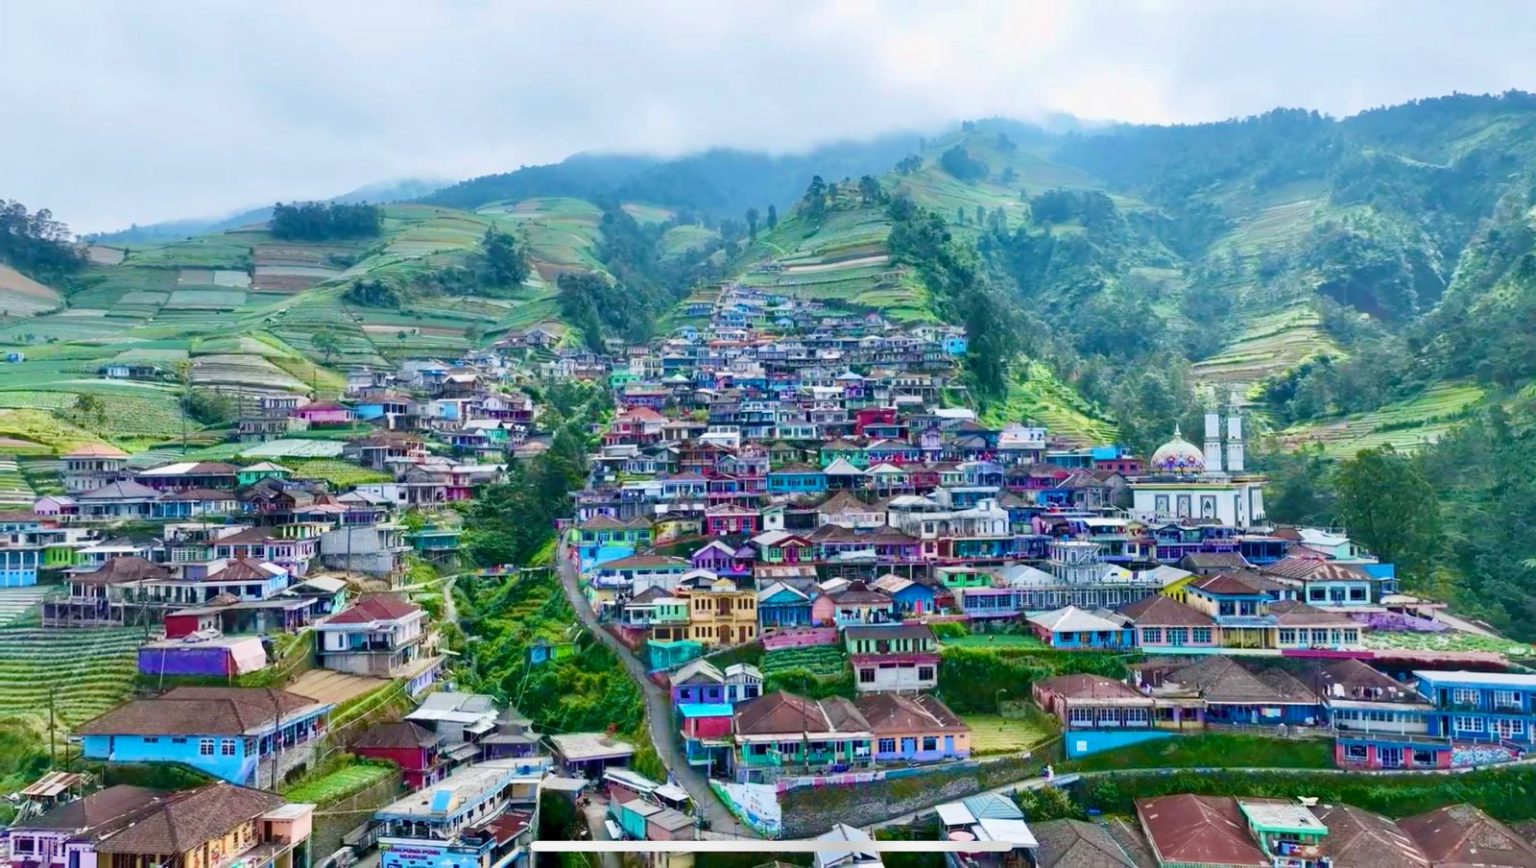 Melepas Penat ke Nepal van Java